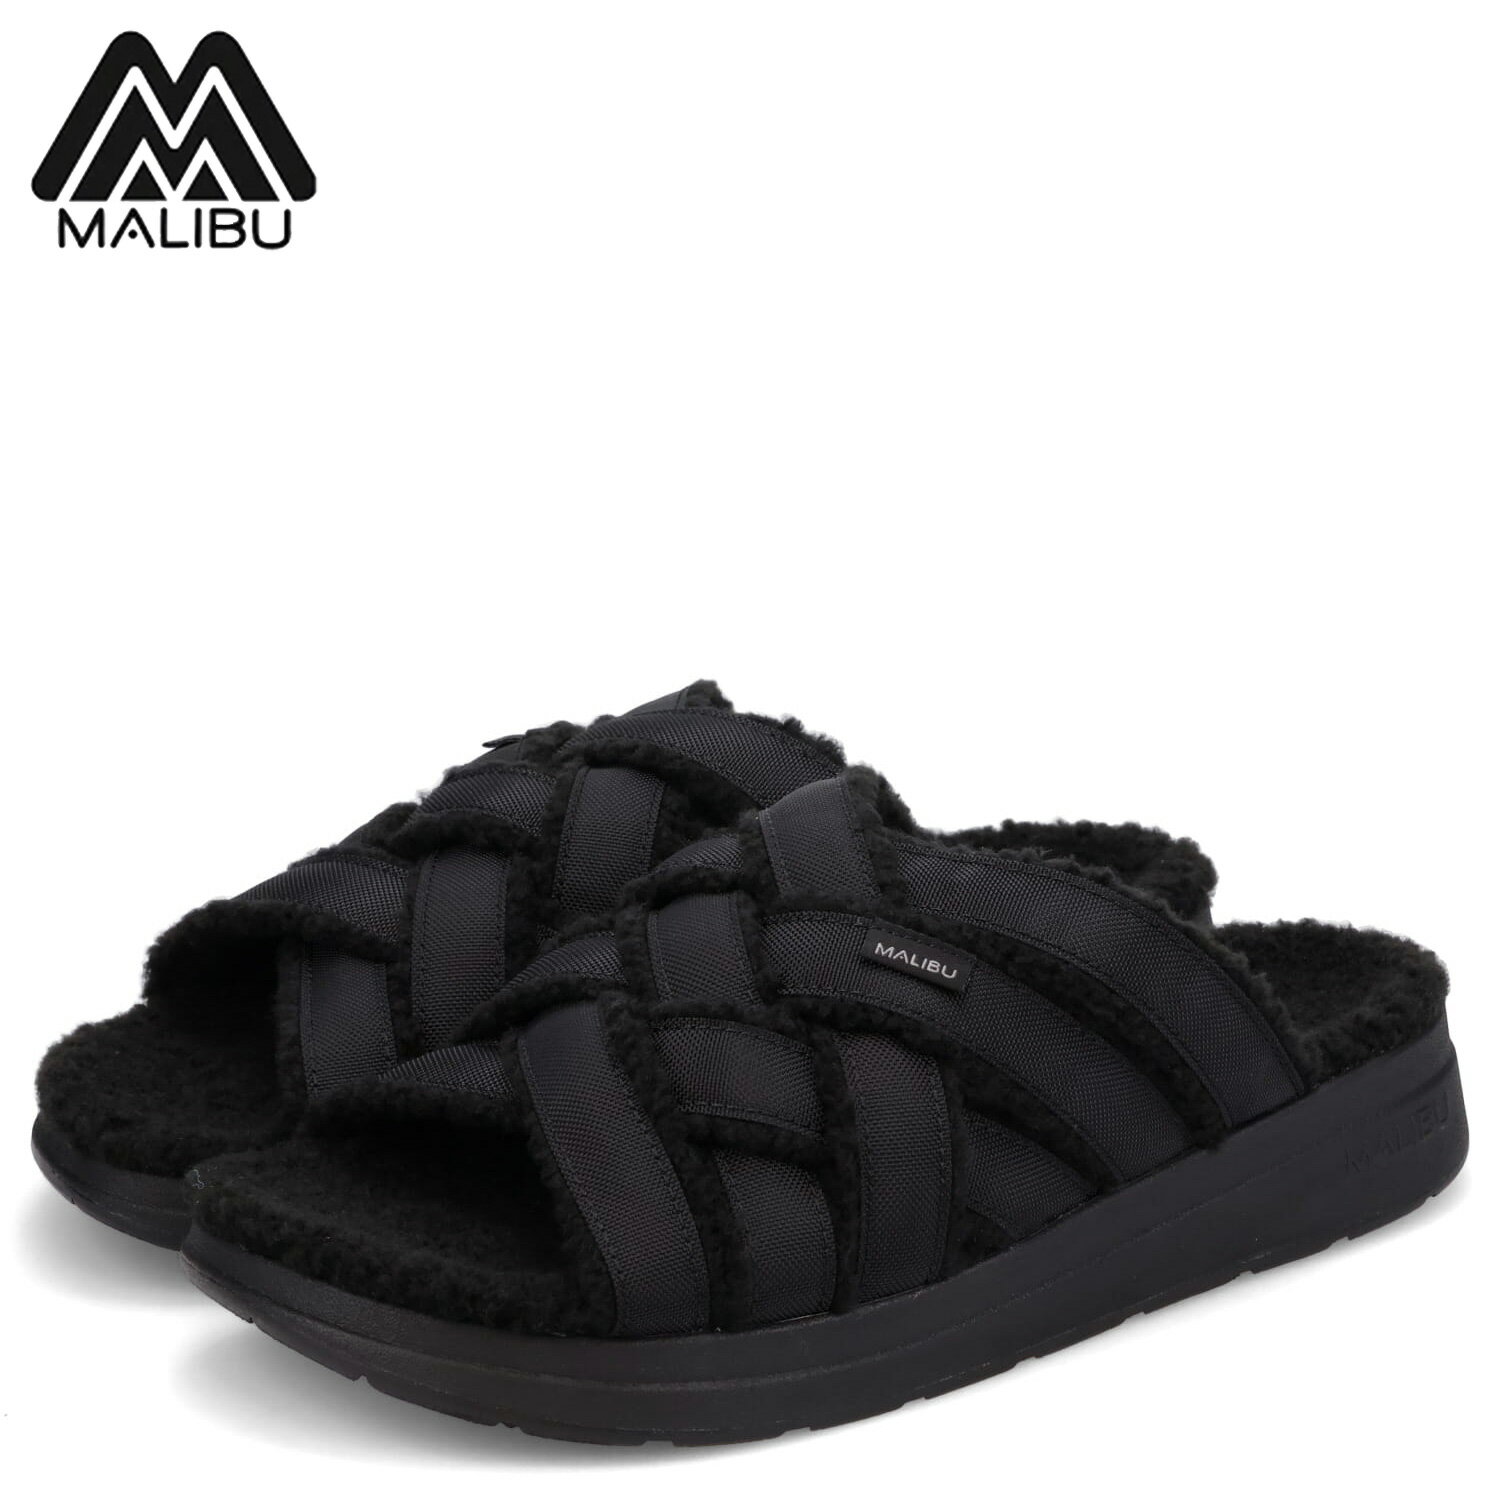 MALIBU SANDALS マリブサンダルズ サンダル スライドサンダル ズマ メンズ ZUMA LX ブラック 黒 MS02-4000